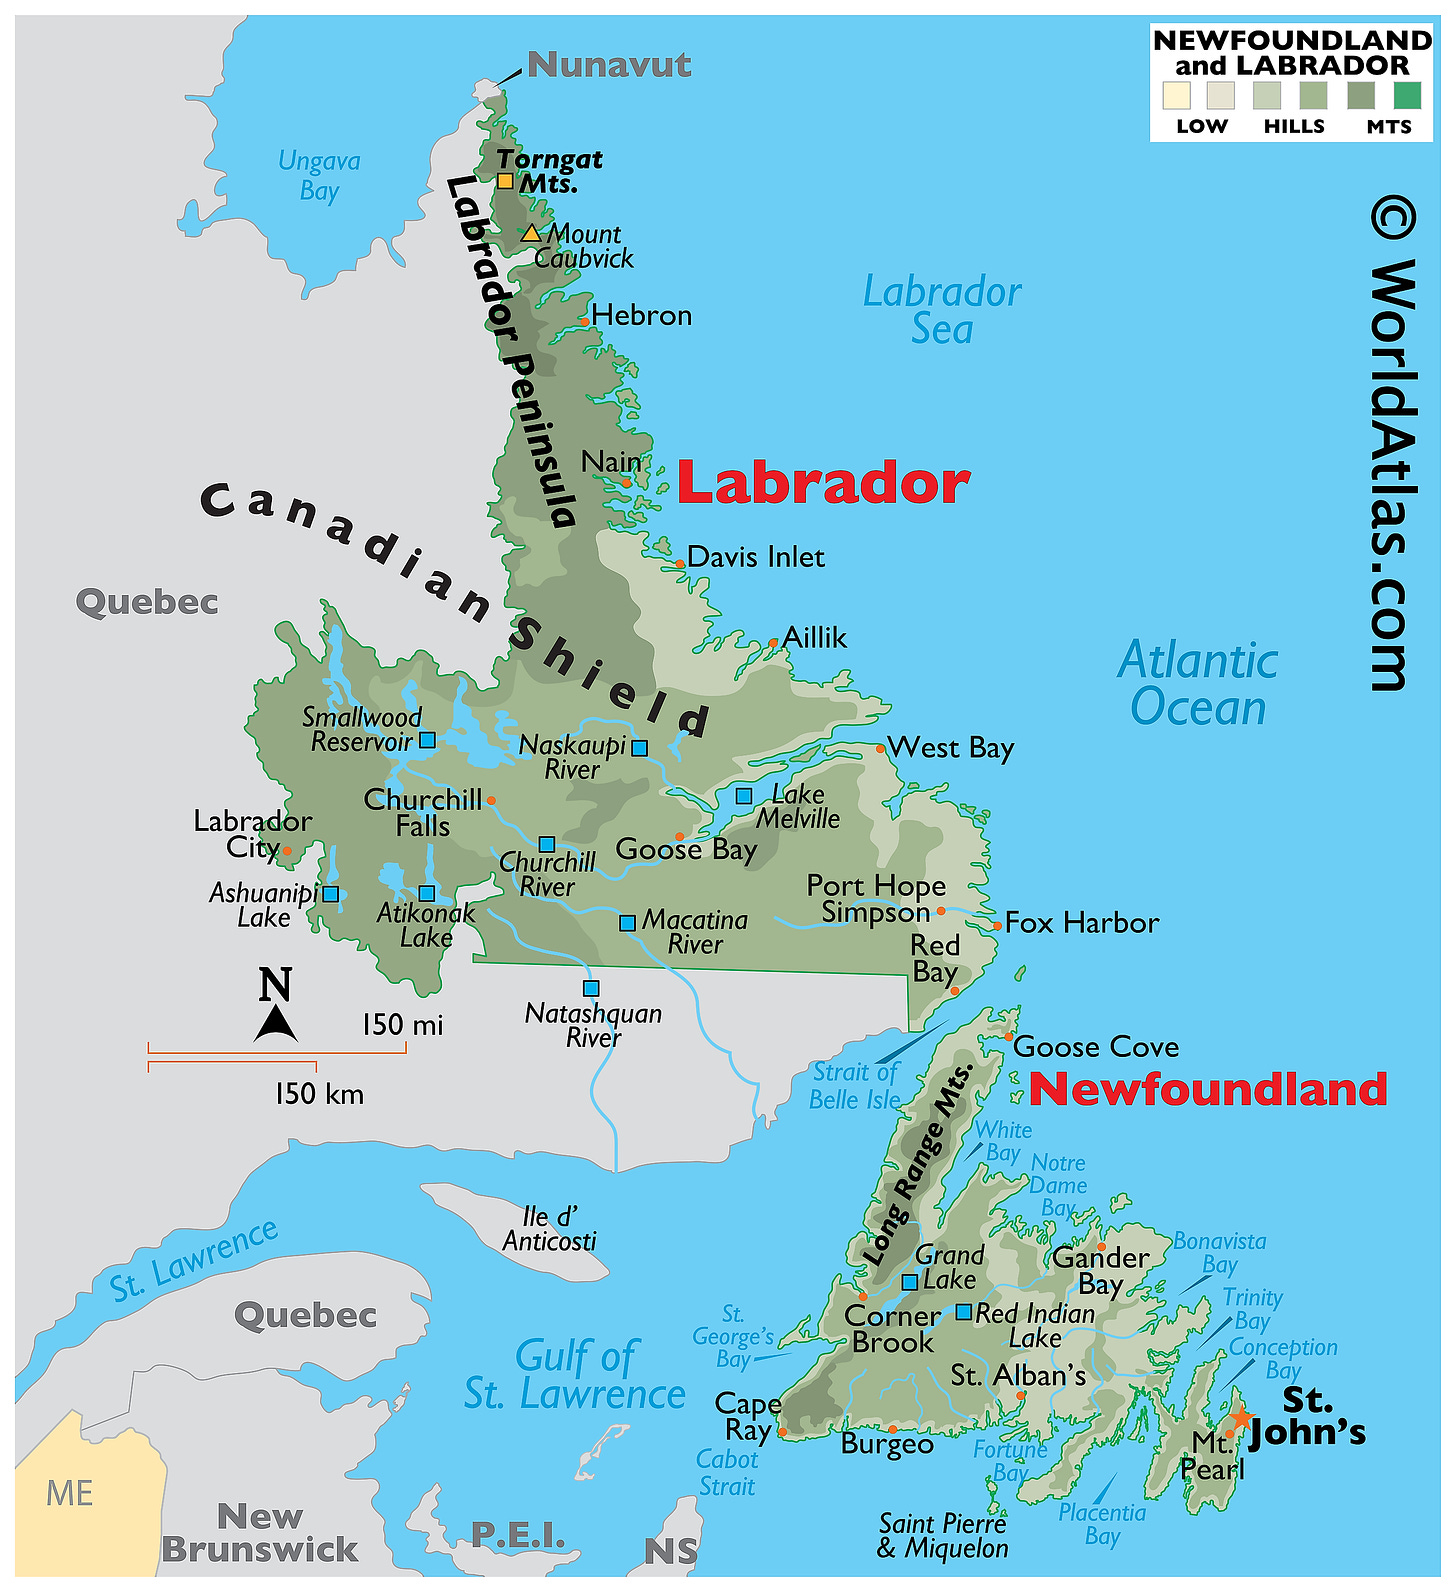 Newfoundland and Labrador Maps & Facts - World Atlas